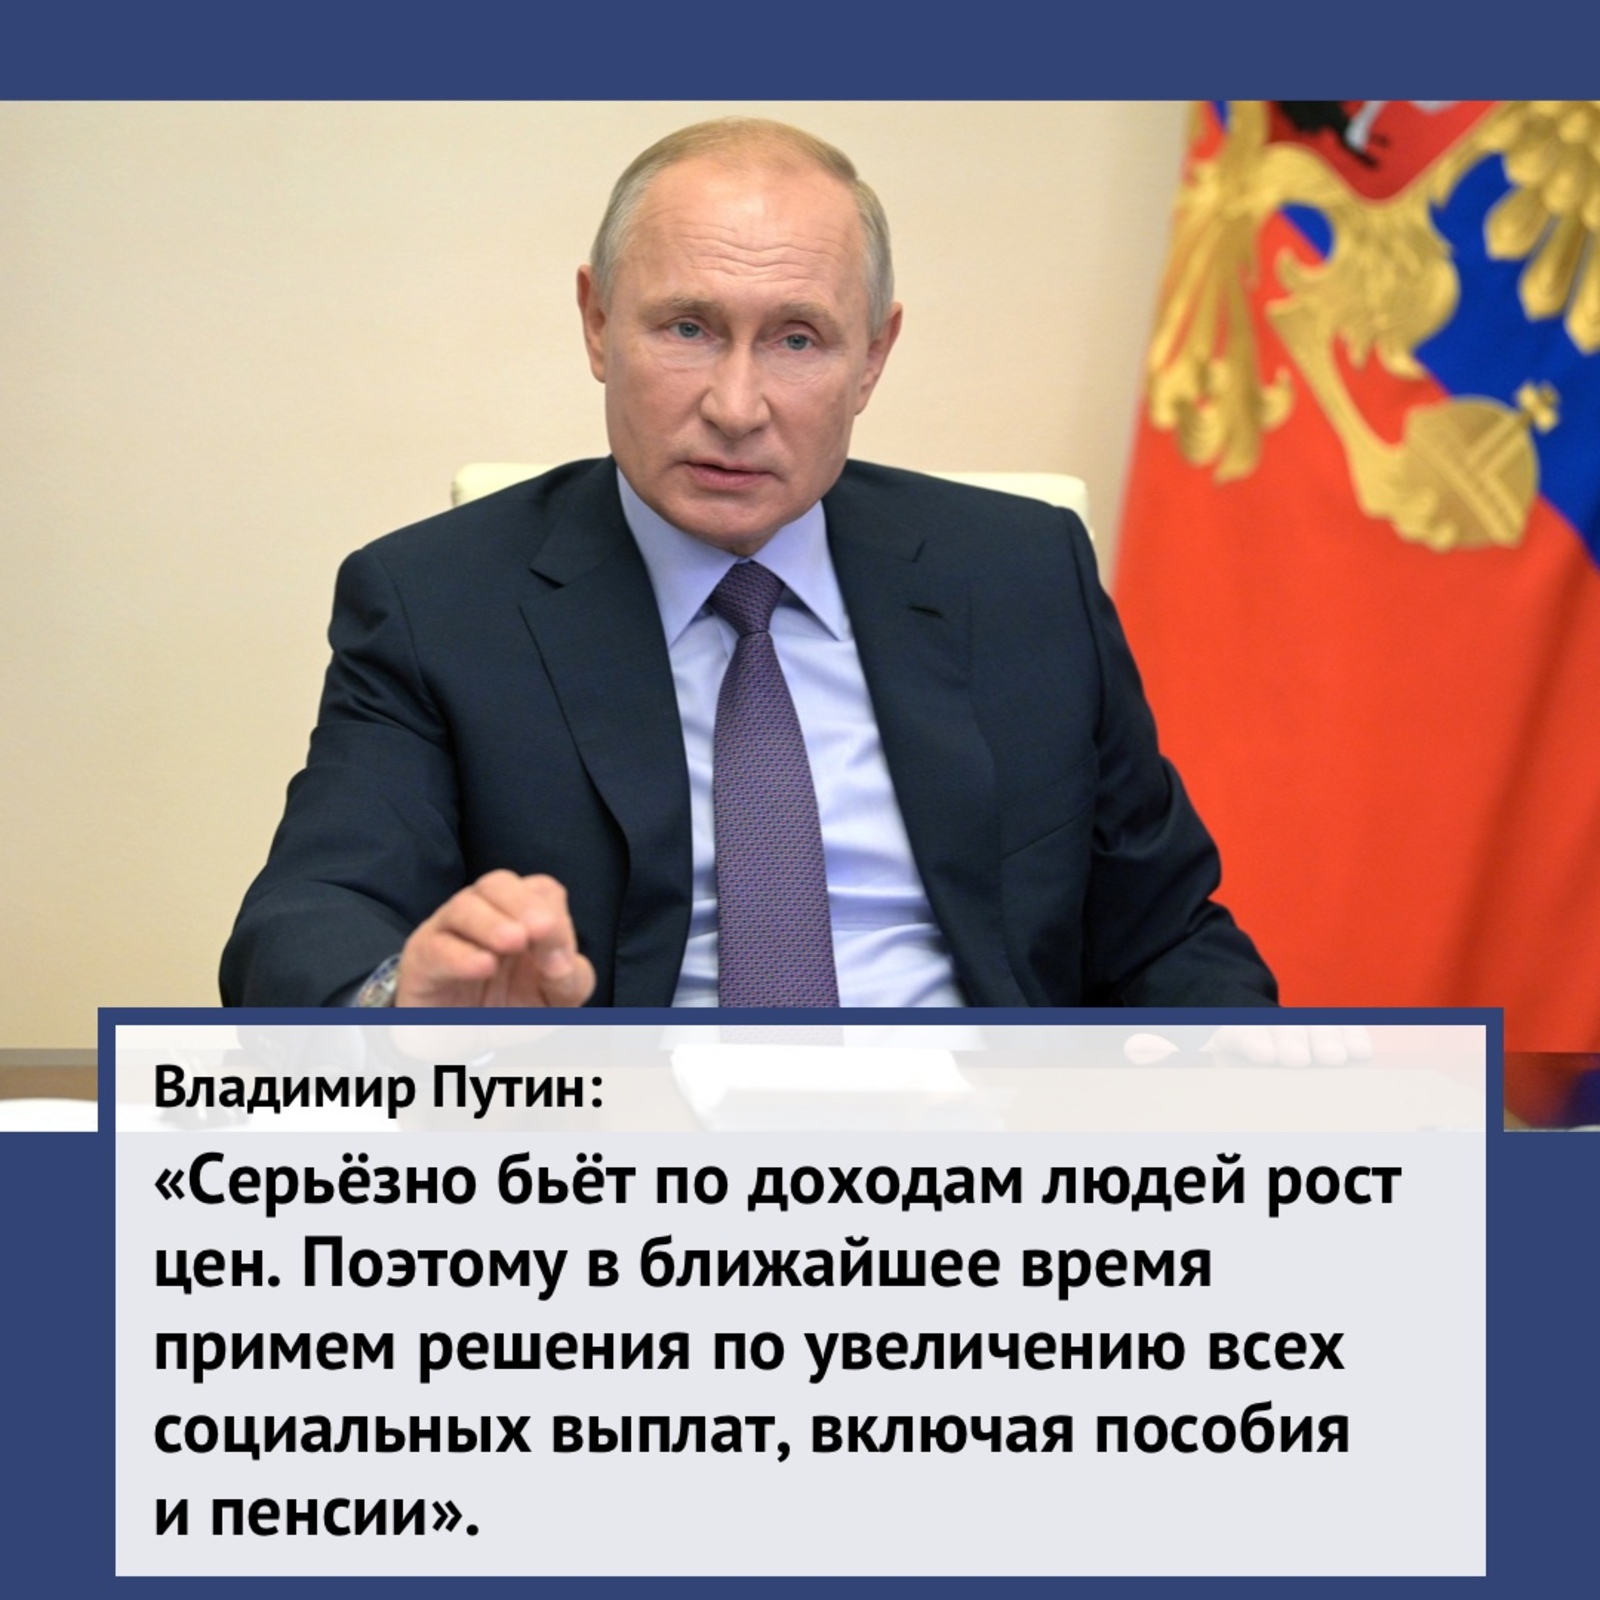 Президент подписал указ "О мерах по обеспечению социально-экономической стабильности и защиты населения в Российской Федерации".